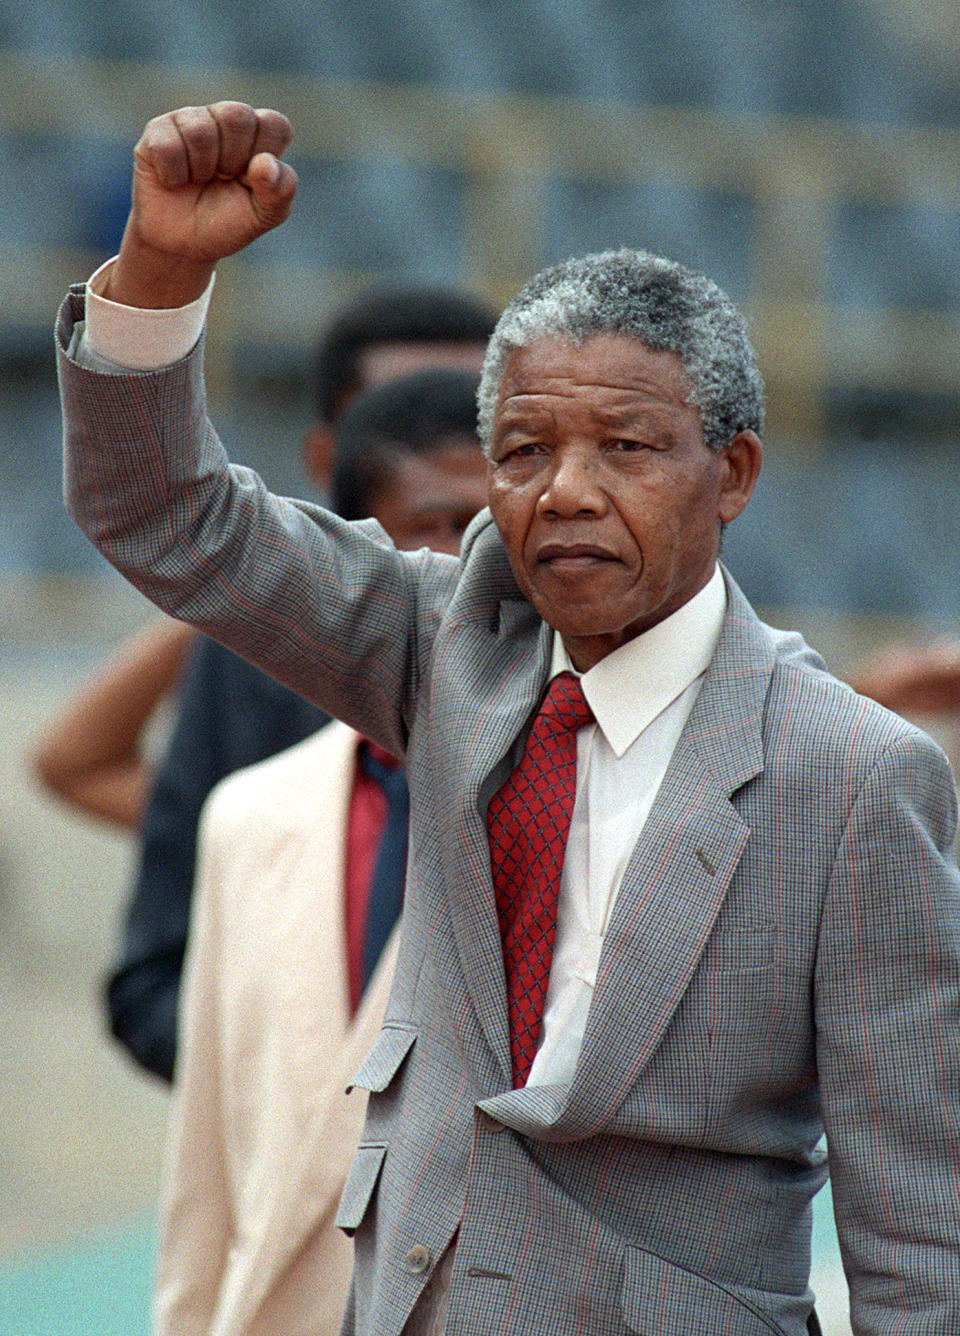 Nelson Mandela in 1990